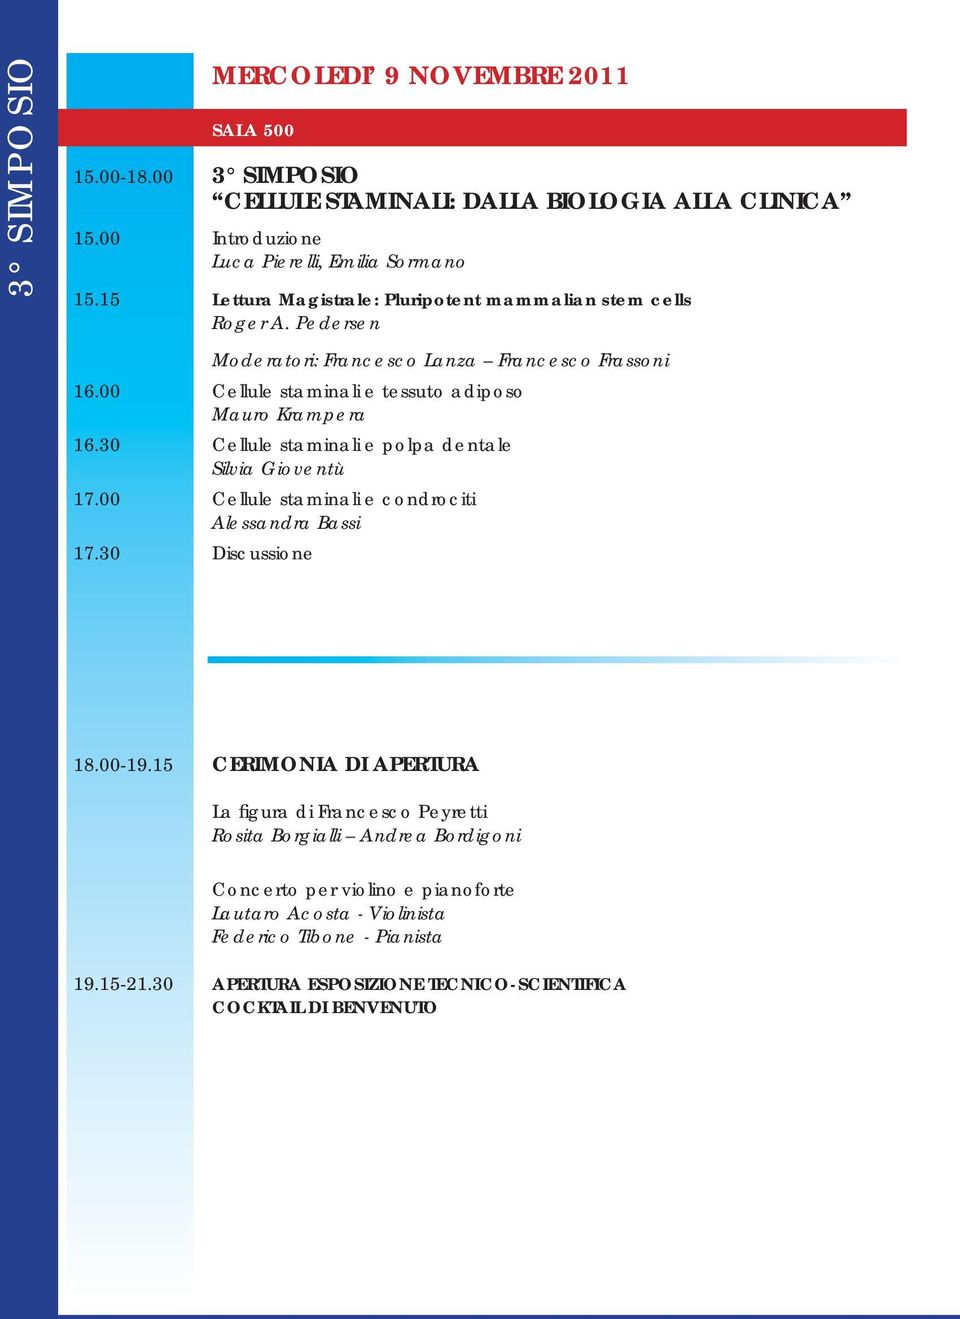 30 Cellule staminali e polpa dentale Silvia Gioventù 17.00 Cellule staminali e condrociti Alessandra Bassi 17.30 Discussione 18.00-19.